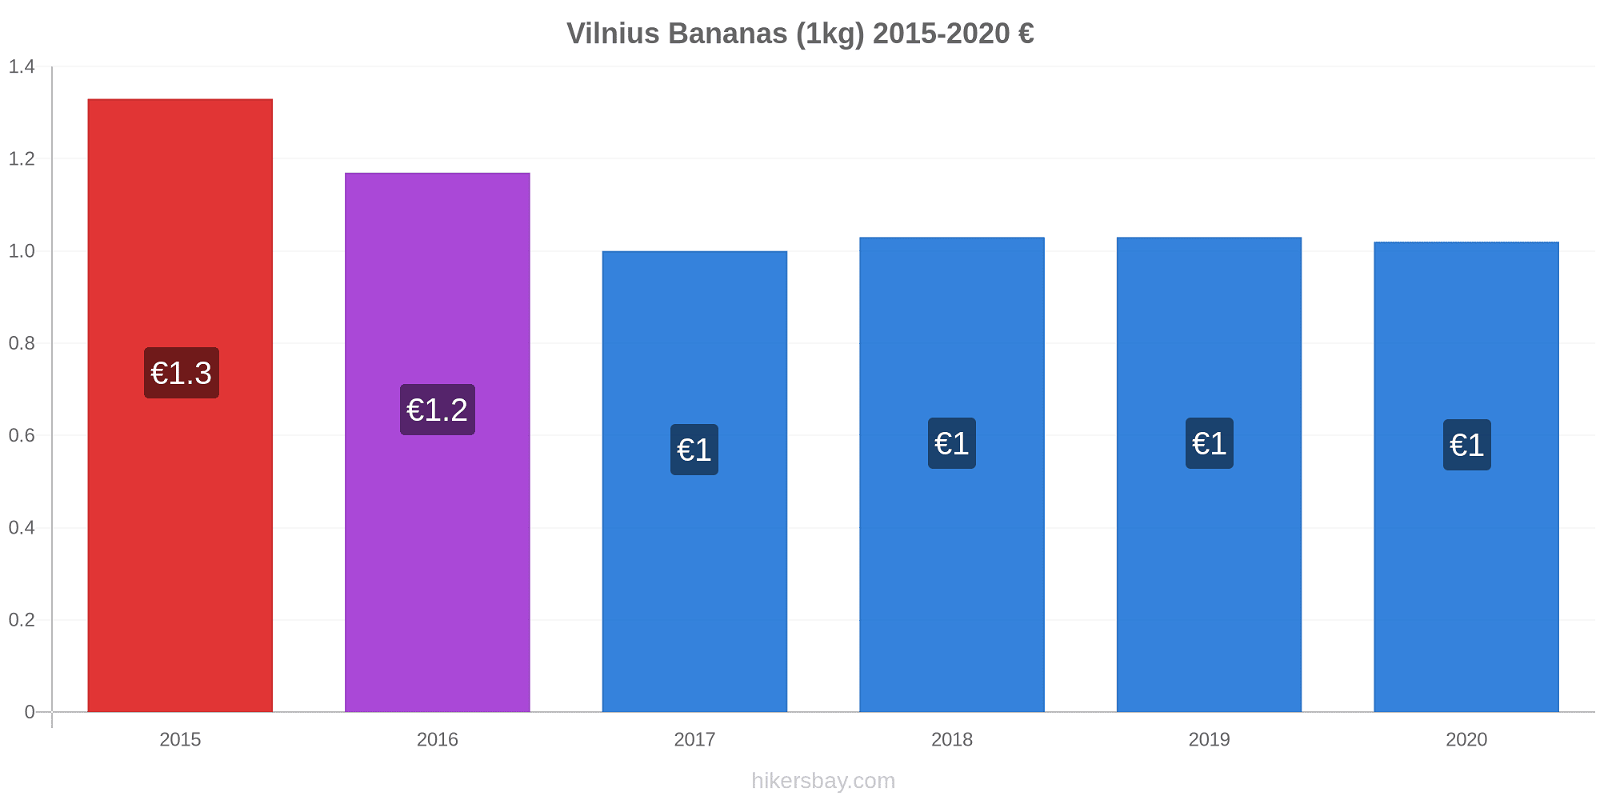 Vilnius variação de preço Banana (1kg) hikersbay.com